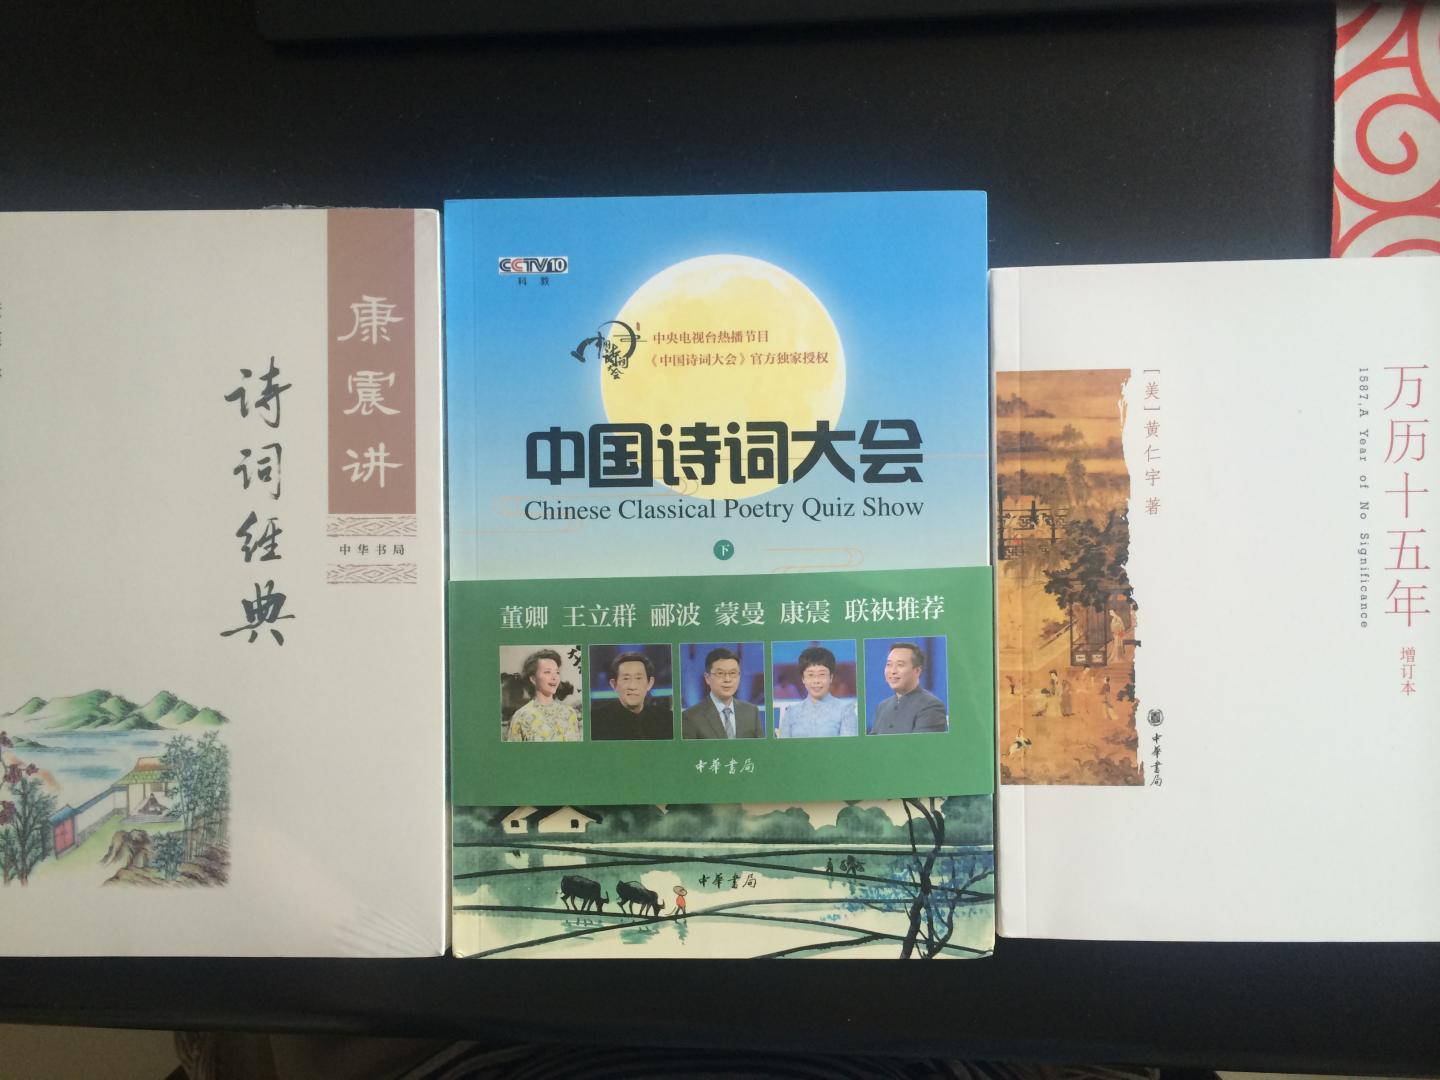 康震老师的解读很有美感，能感受到他对中国古典诗词的热爱，对民族文化的情感。值得推荐。